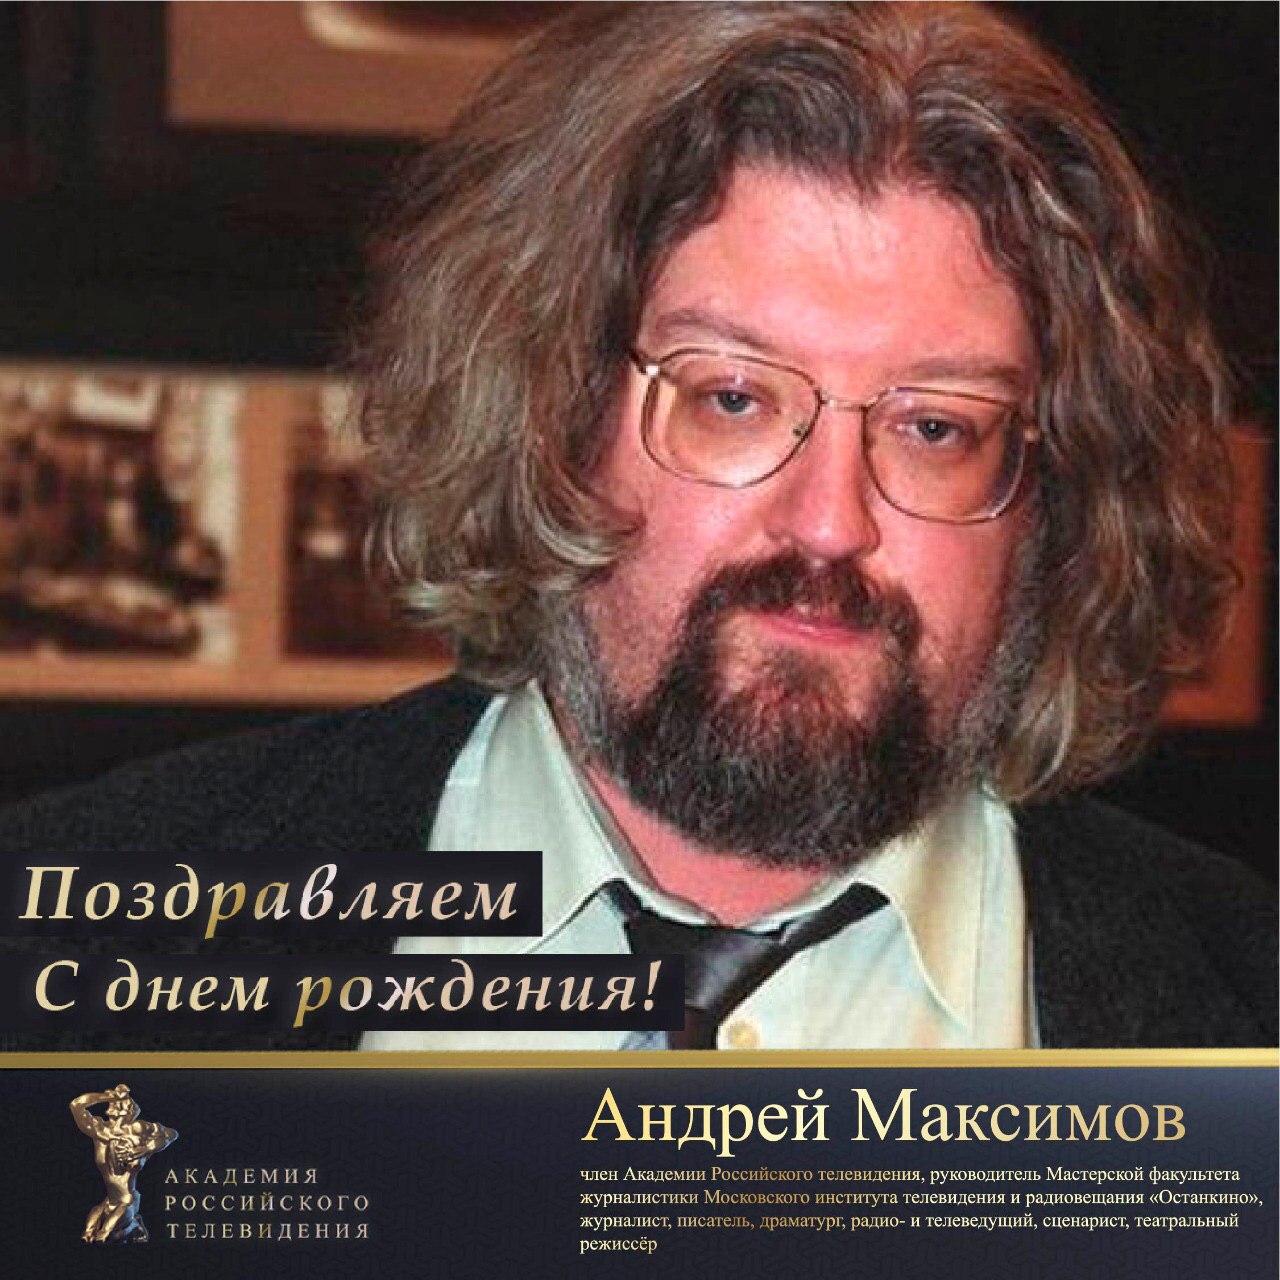 Андрей Максимов ведущий